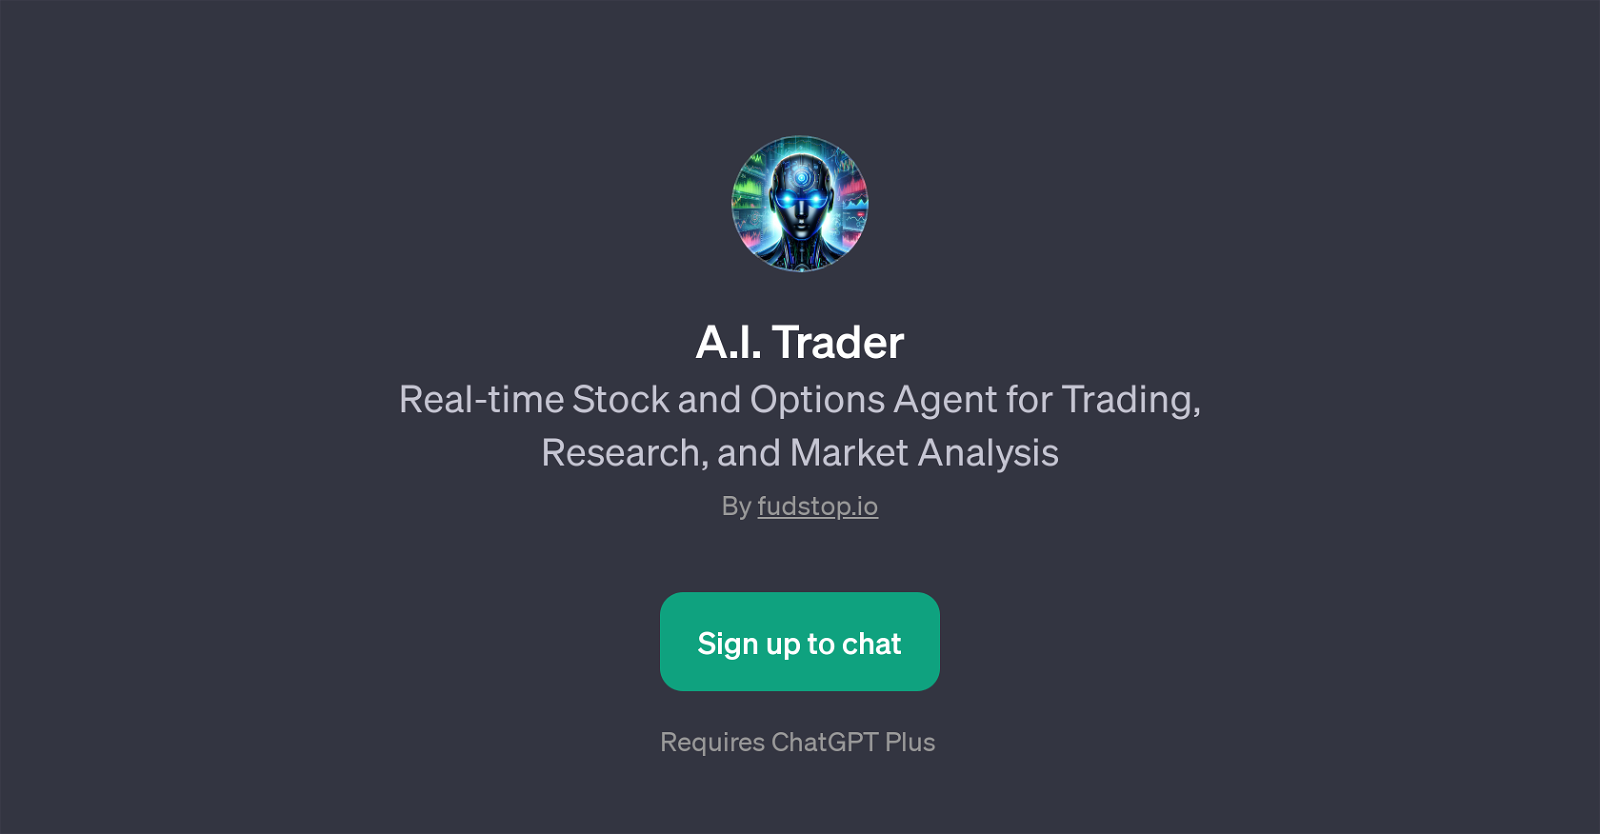 A.I. Trader website